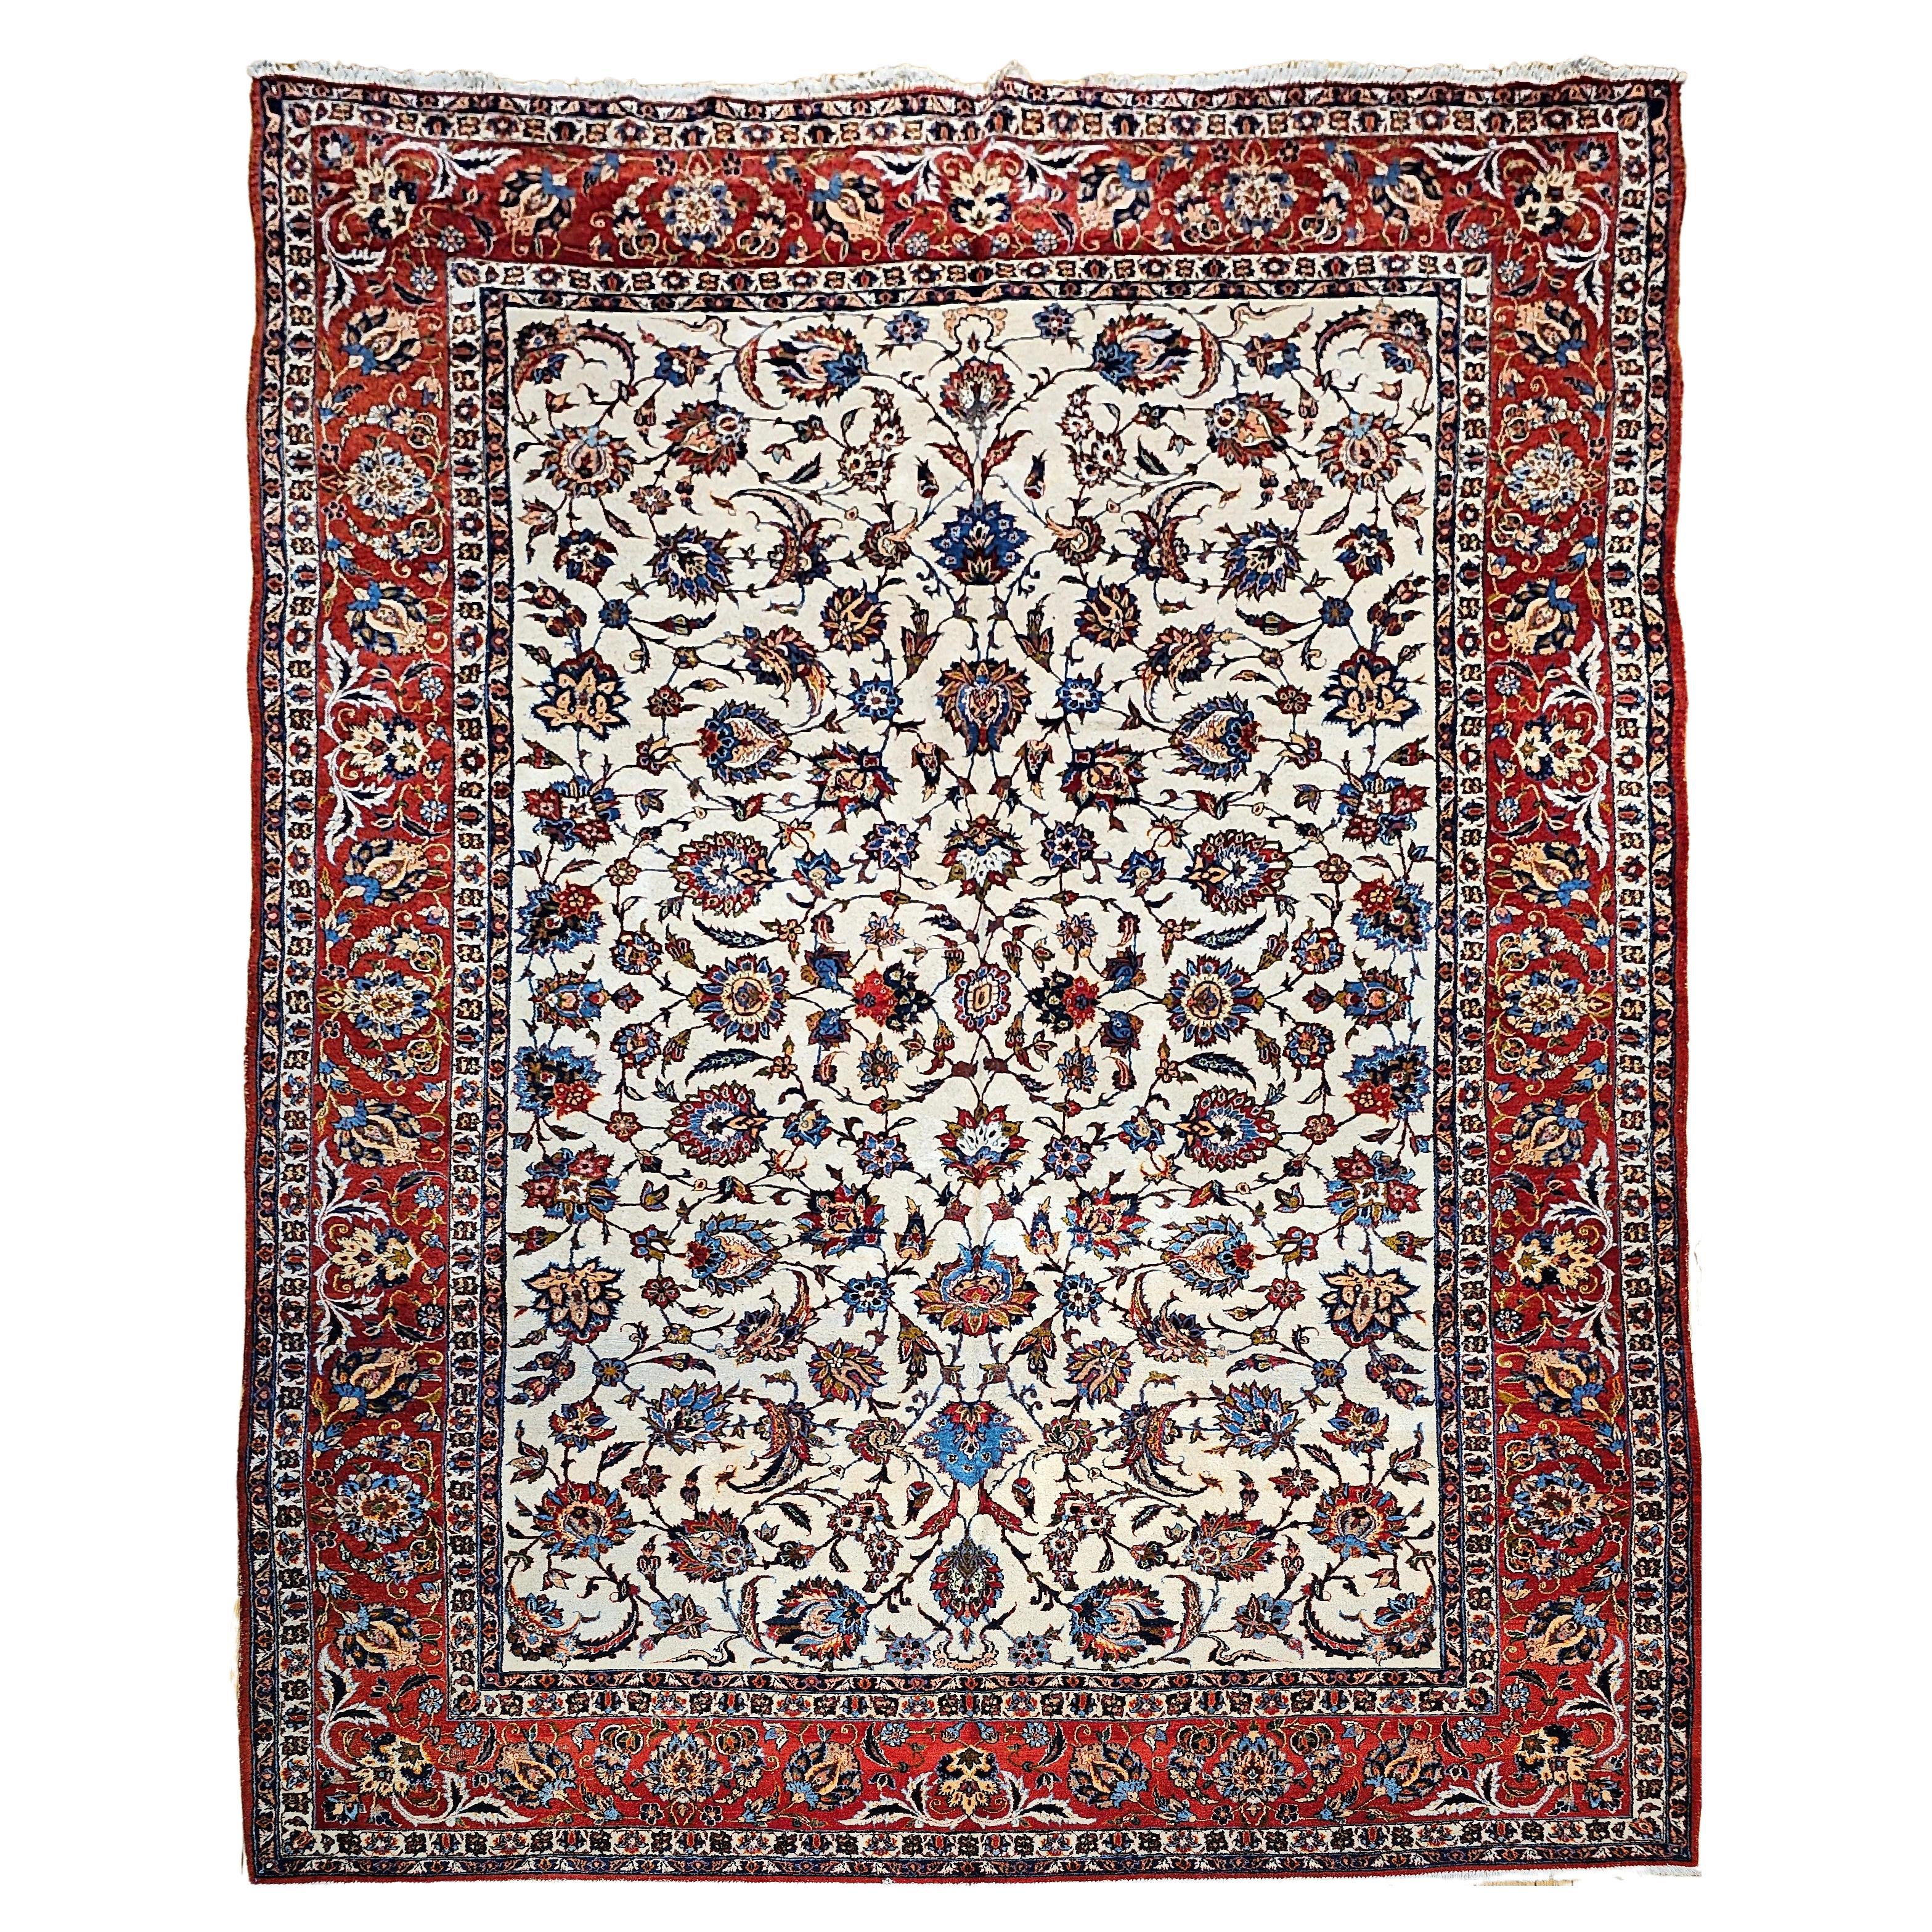 Taille de la pièce vintage Persian Isfahan en motif floral sur toute sa surface en ivoire, rouge et bleu